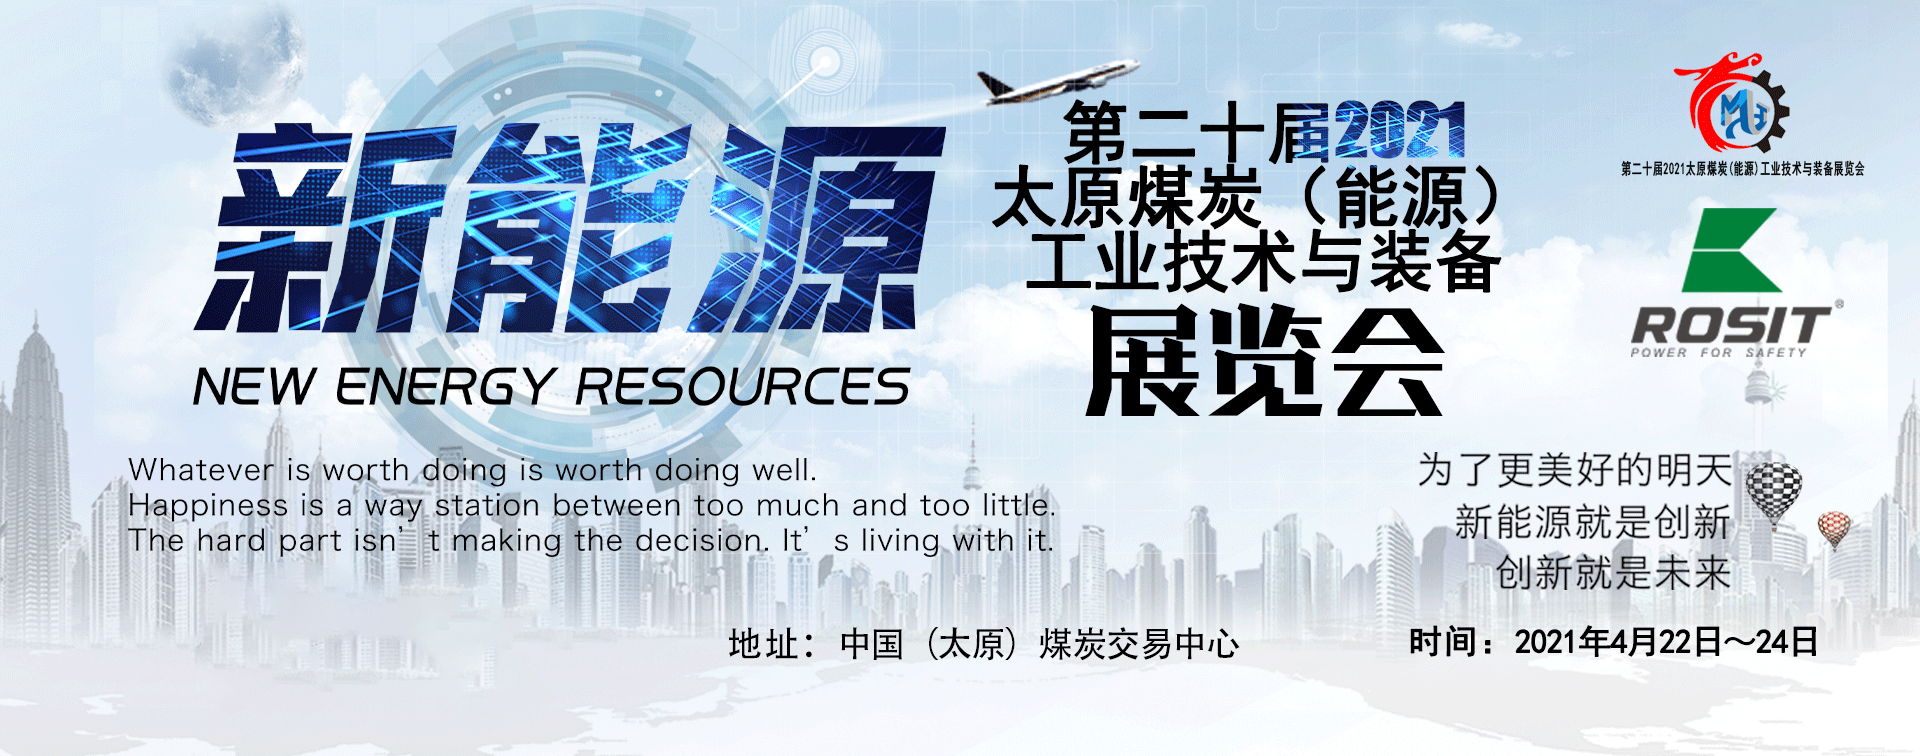 El vigésimo TaiYuan (2021) Carbón (recursos energéticos) Tecnología y amp; Exposición de equipos